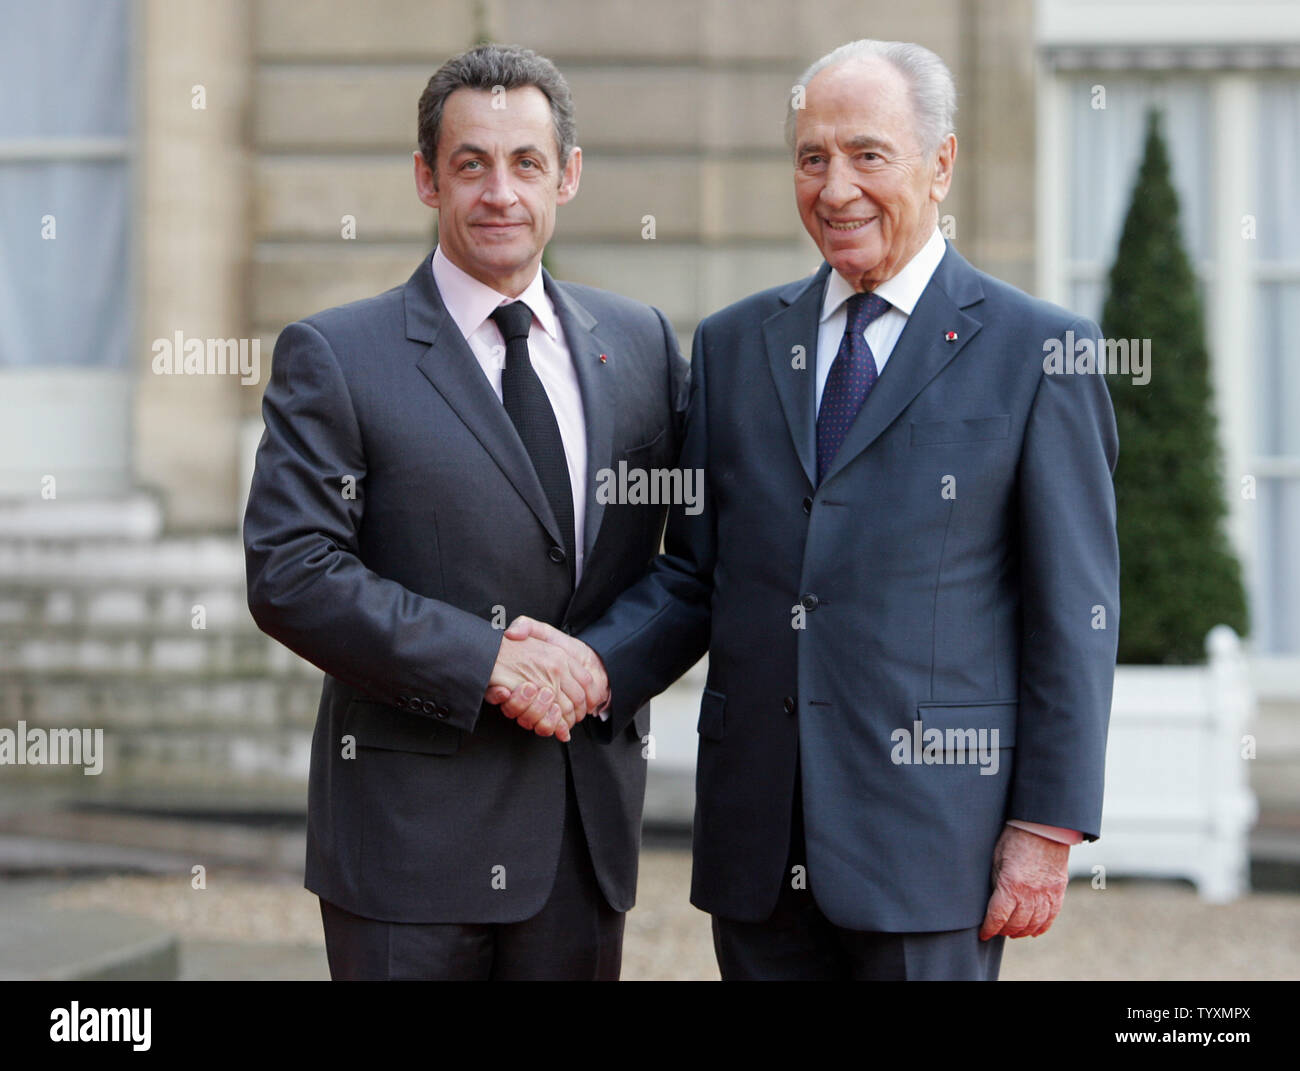 Le président français Nicolas Sarkozy accueille son homologue israélien Shimon Peres (R) à son arrivée à l'Elysée à Paris, le 10 mars 2008. Peres, qui est en France pour une durée de cinq jours est le premier chef d'état de payer une visite d'Etat en France depuis Sarkozy a pris le pouvoir il y a neuf mois. (Photo d'UPI/Eco Clement) Banque D'Images